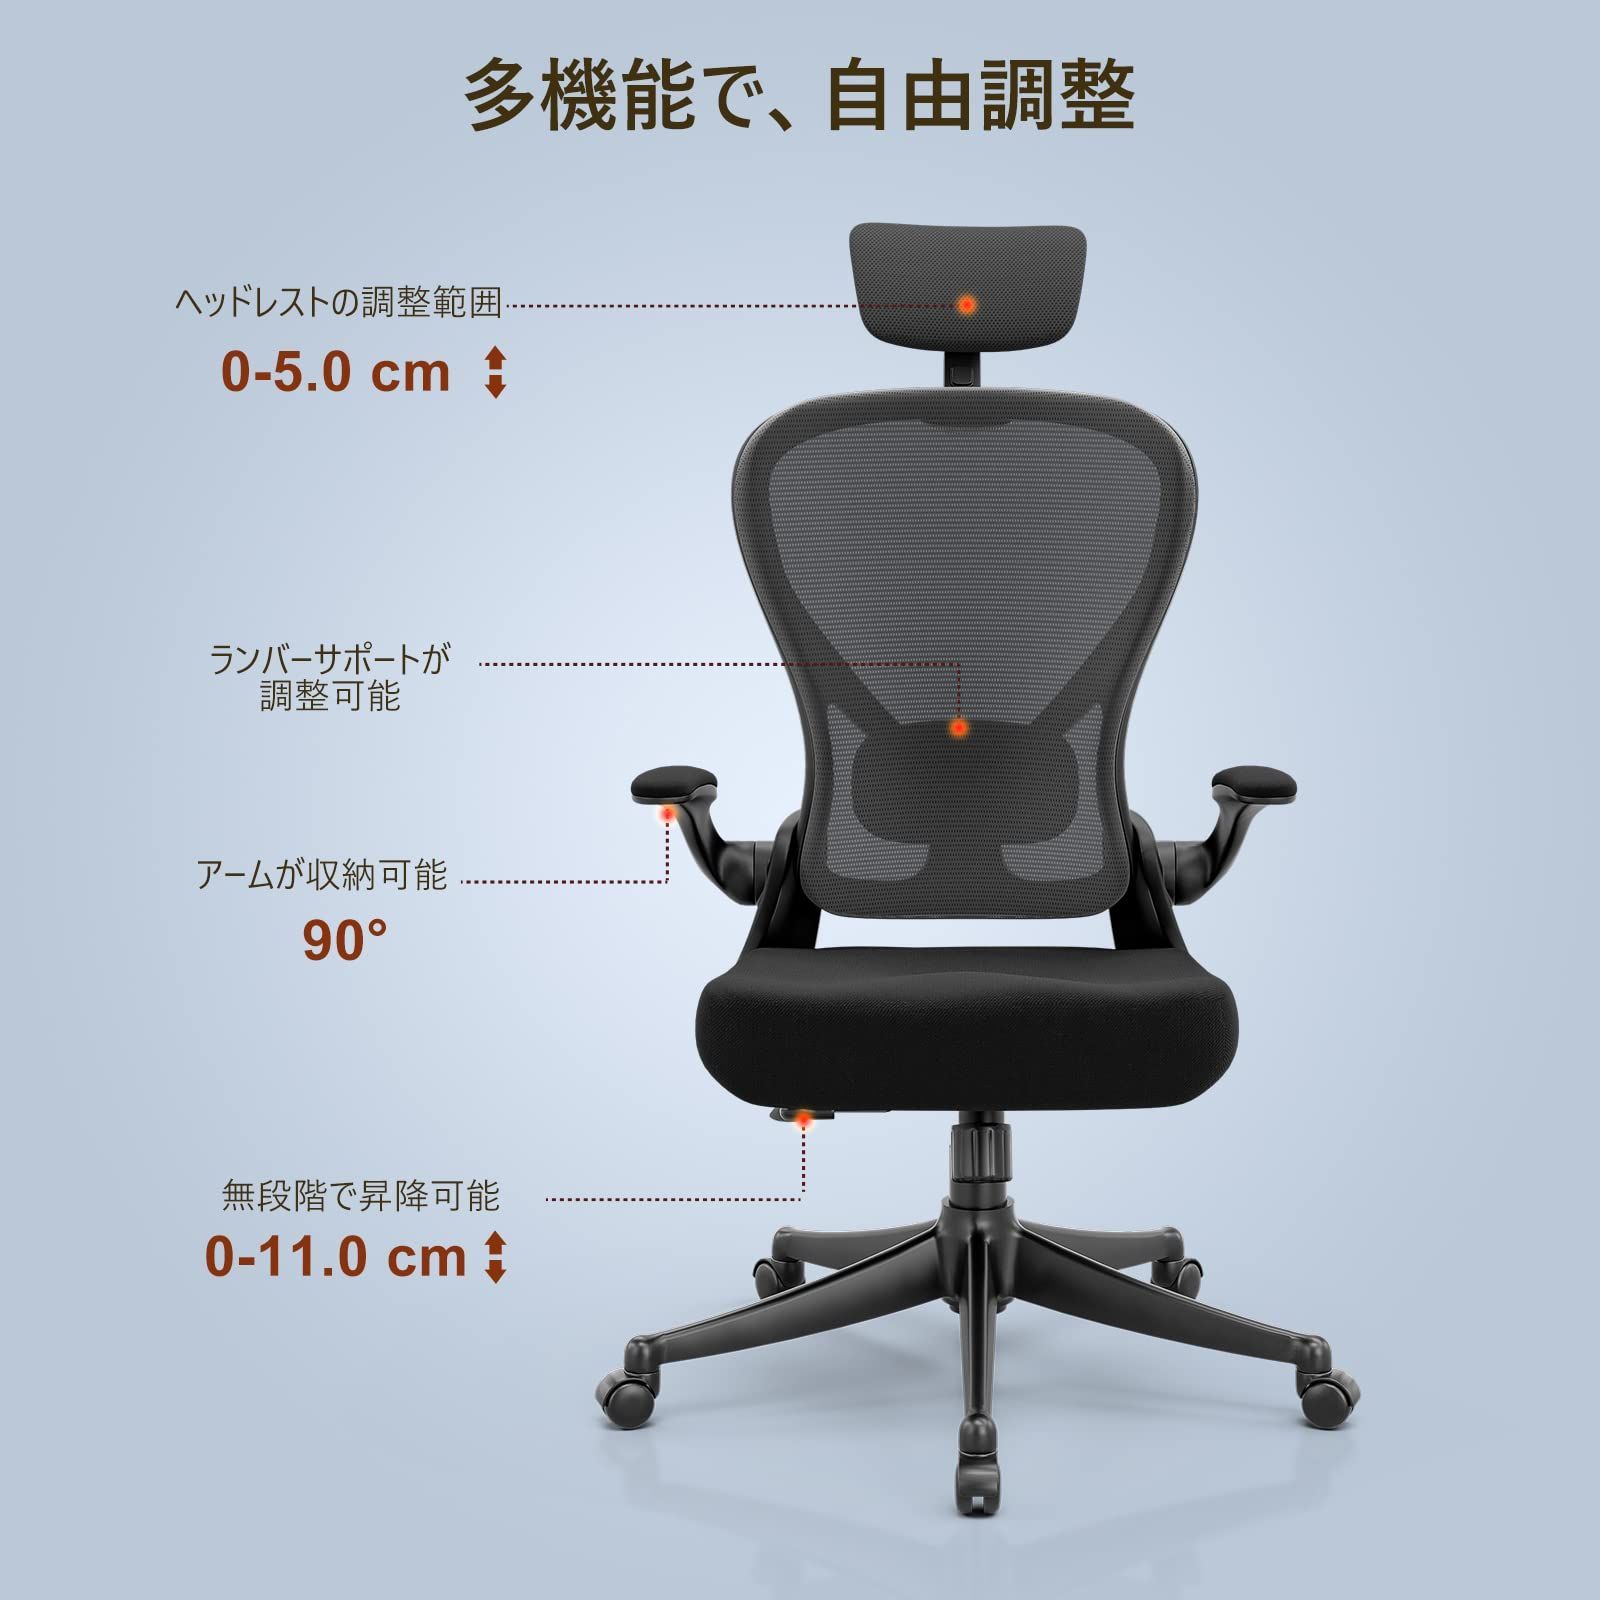 Frylr フィスチェア デスクチェア 人間工学 椅子 360度回転 135度 ...